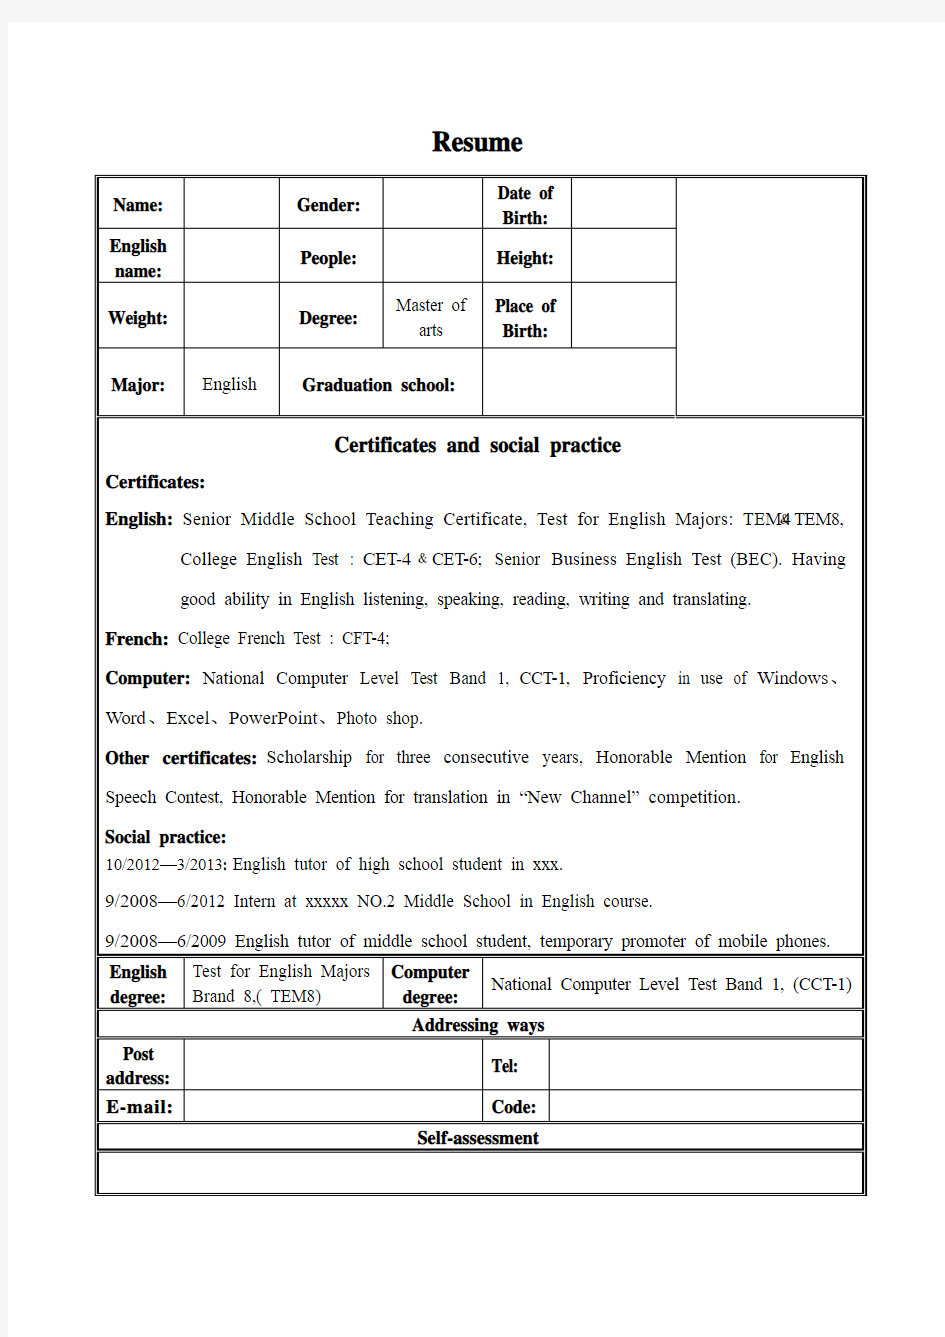 英文简历模板(包括相应实习经验及所获证书)